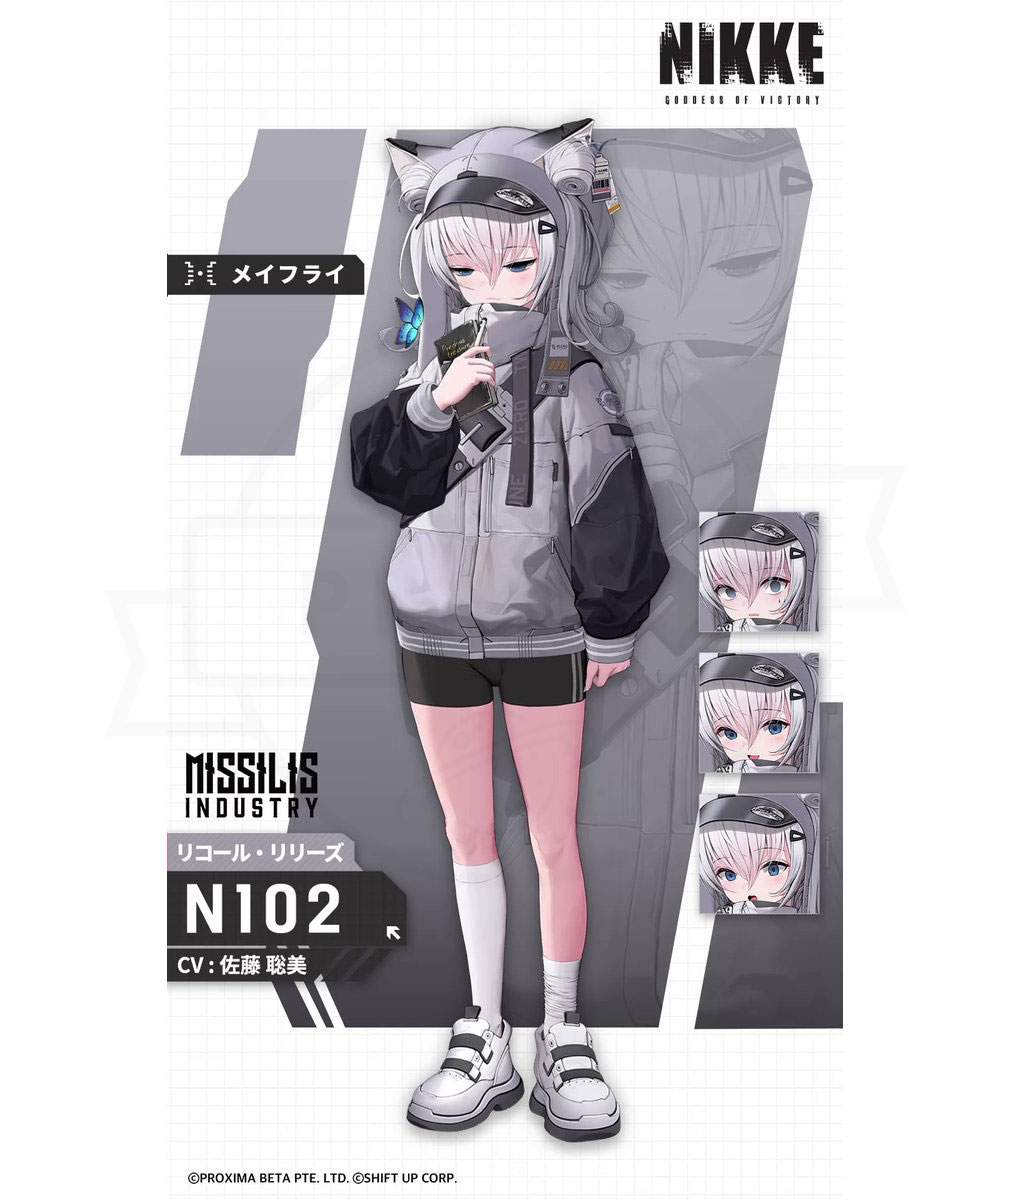 勝利の女神NIKKE (ニケ)　キャラクター『N102』紹介イメージ